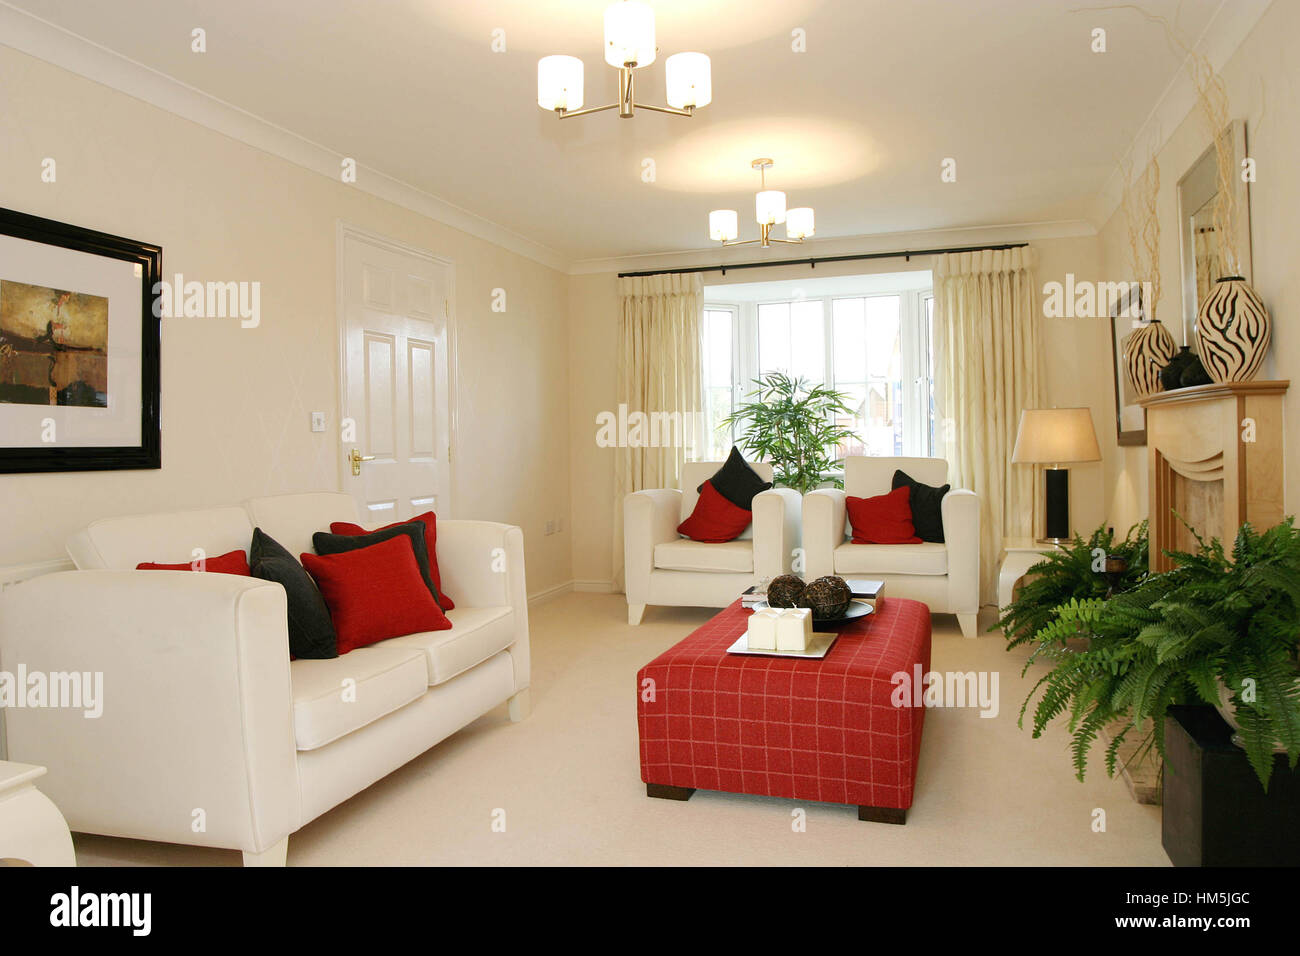 Salón moderno interior, crema suave de color rojo de sofás, mesa de café, amueblado neautral coloración. Foto de stock